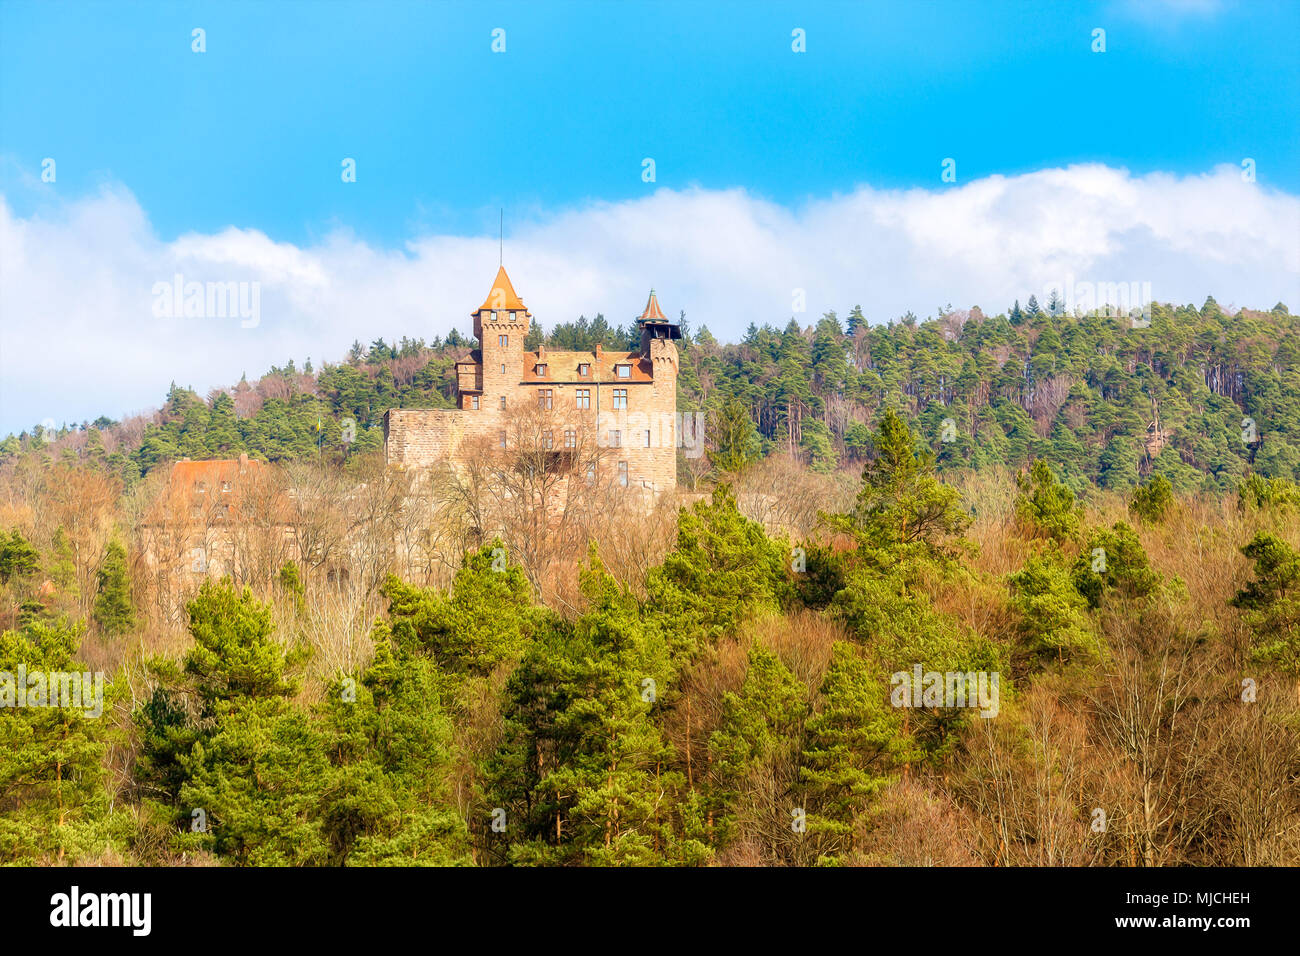 Le château Berwartstein dans la forêt palatine Banque D'Images